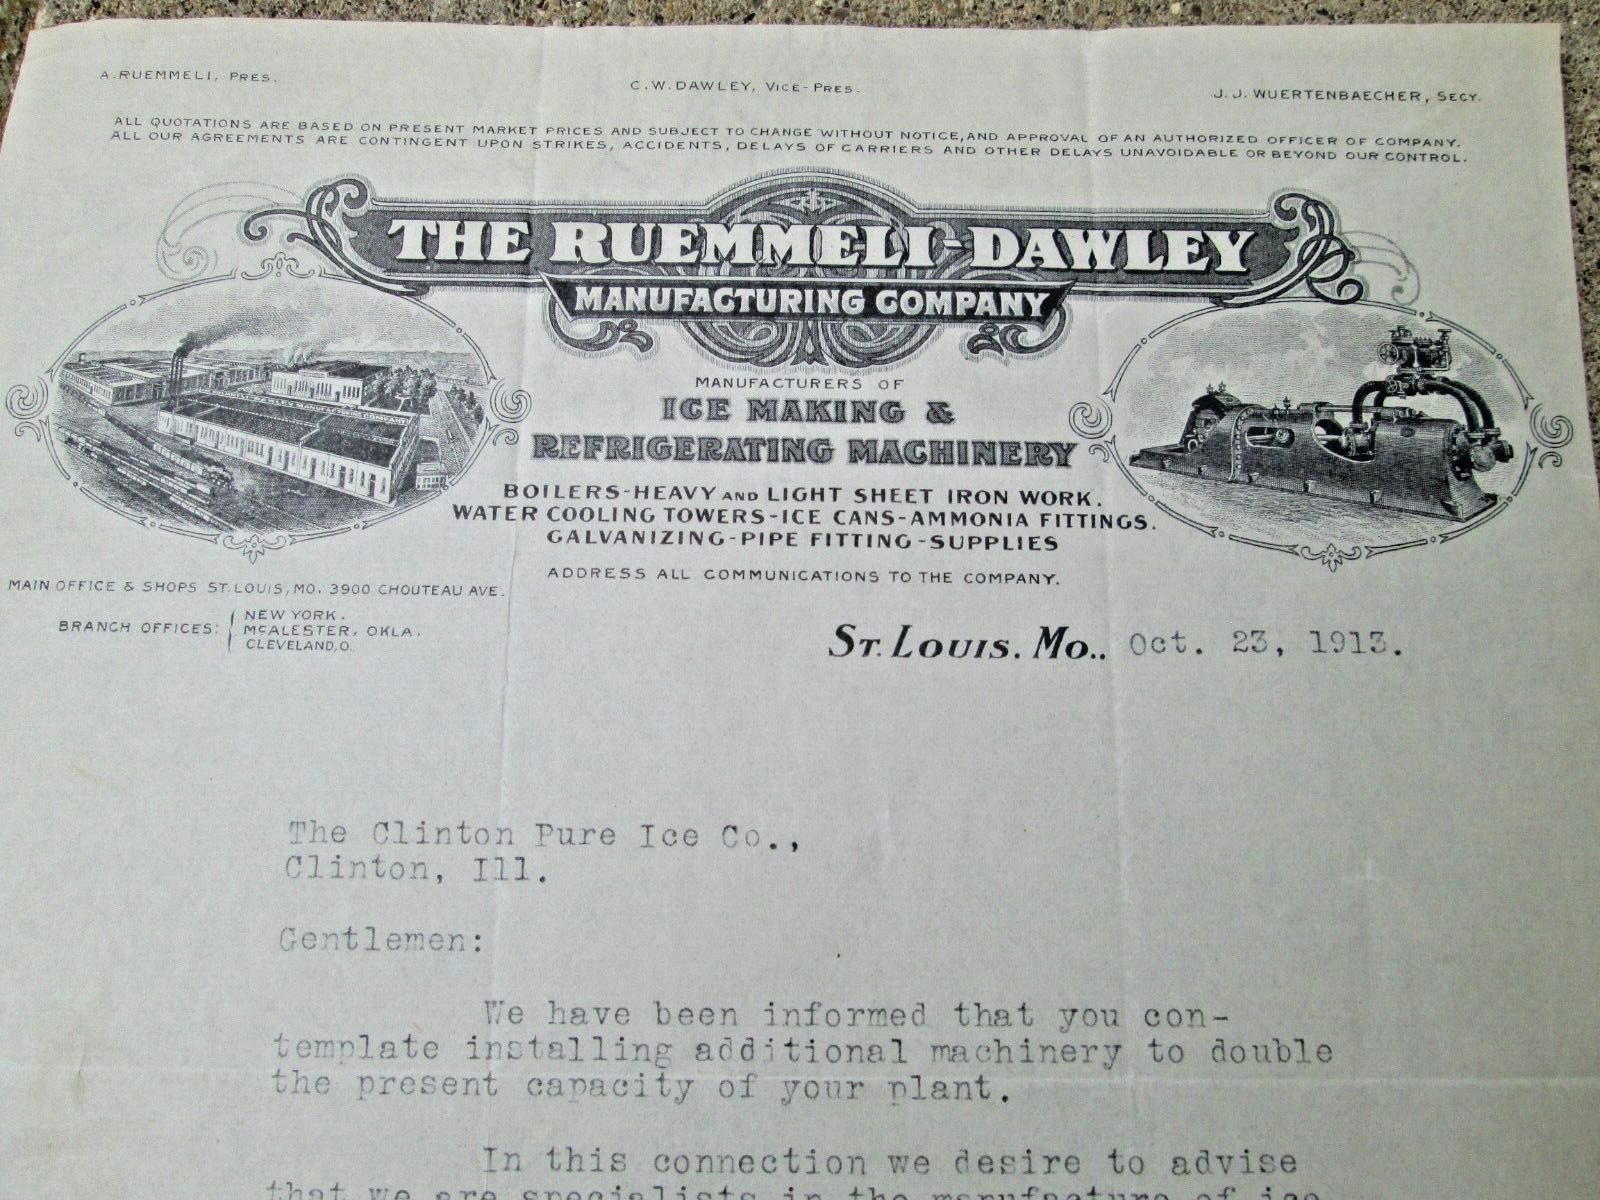 Oct. 23, 1912 Business Letterhead Letter Ruemmeli Dawley Mfg. Co. St. Louis ICE